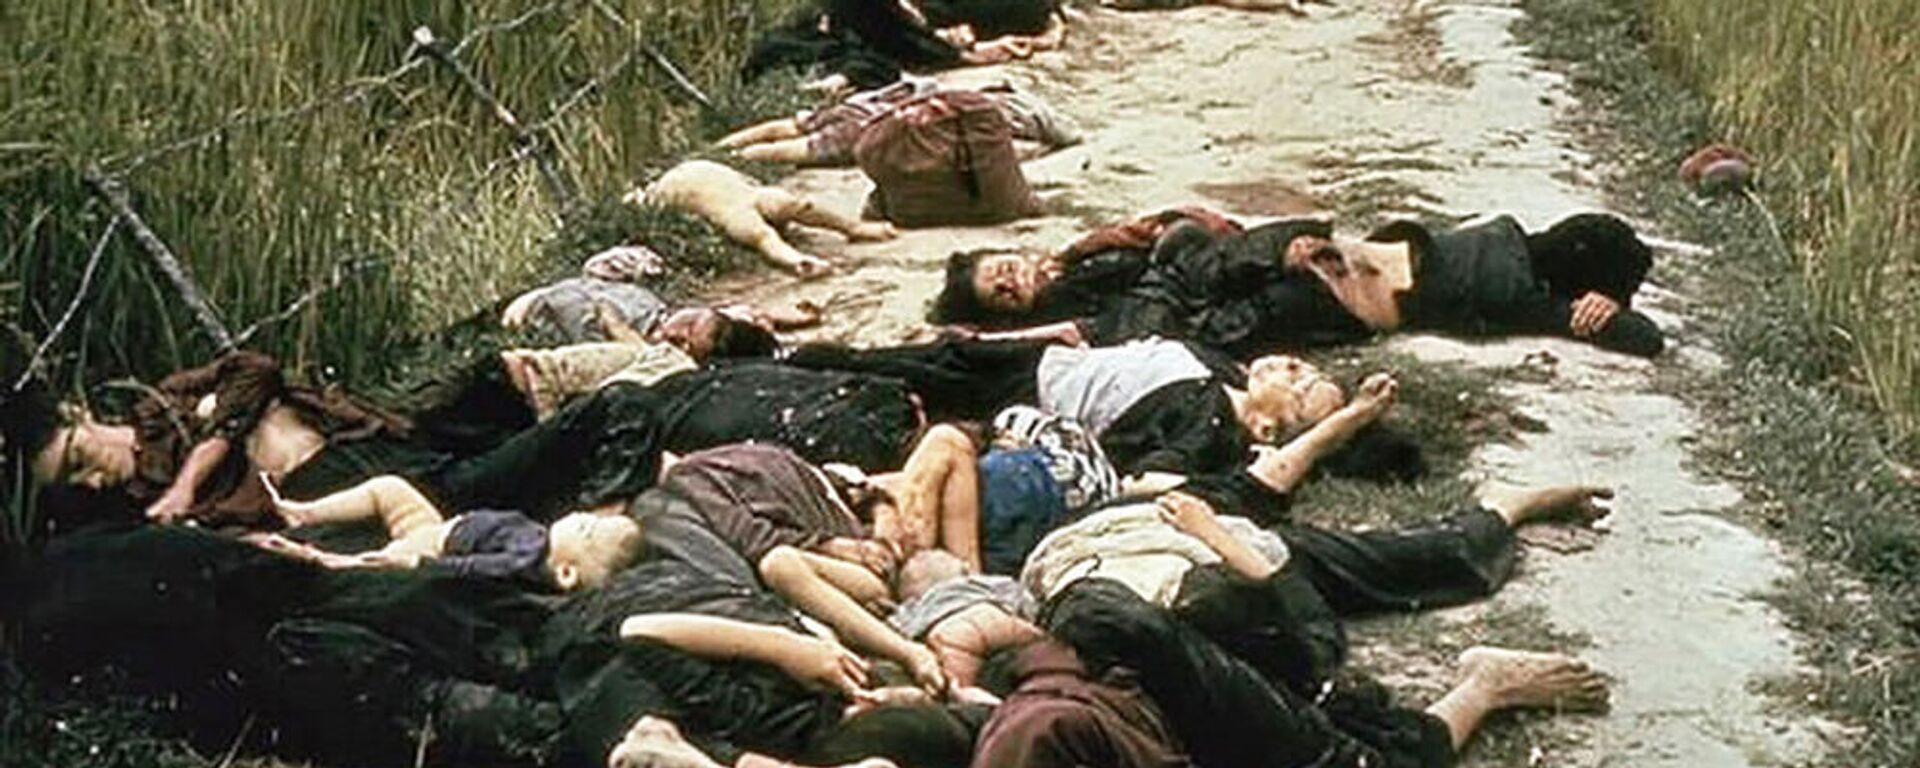 Vụ thảm sát dân thường do binh lính Quân đội Hoa Kỳ tiến hành ở Sơn Mỹ, Việt Nam. Năm 1968 - Sputnik Việt Nam, 1920, 16.03.2018